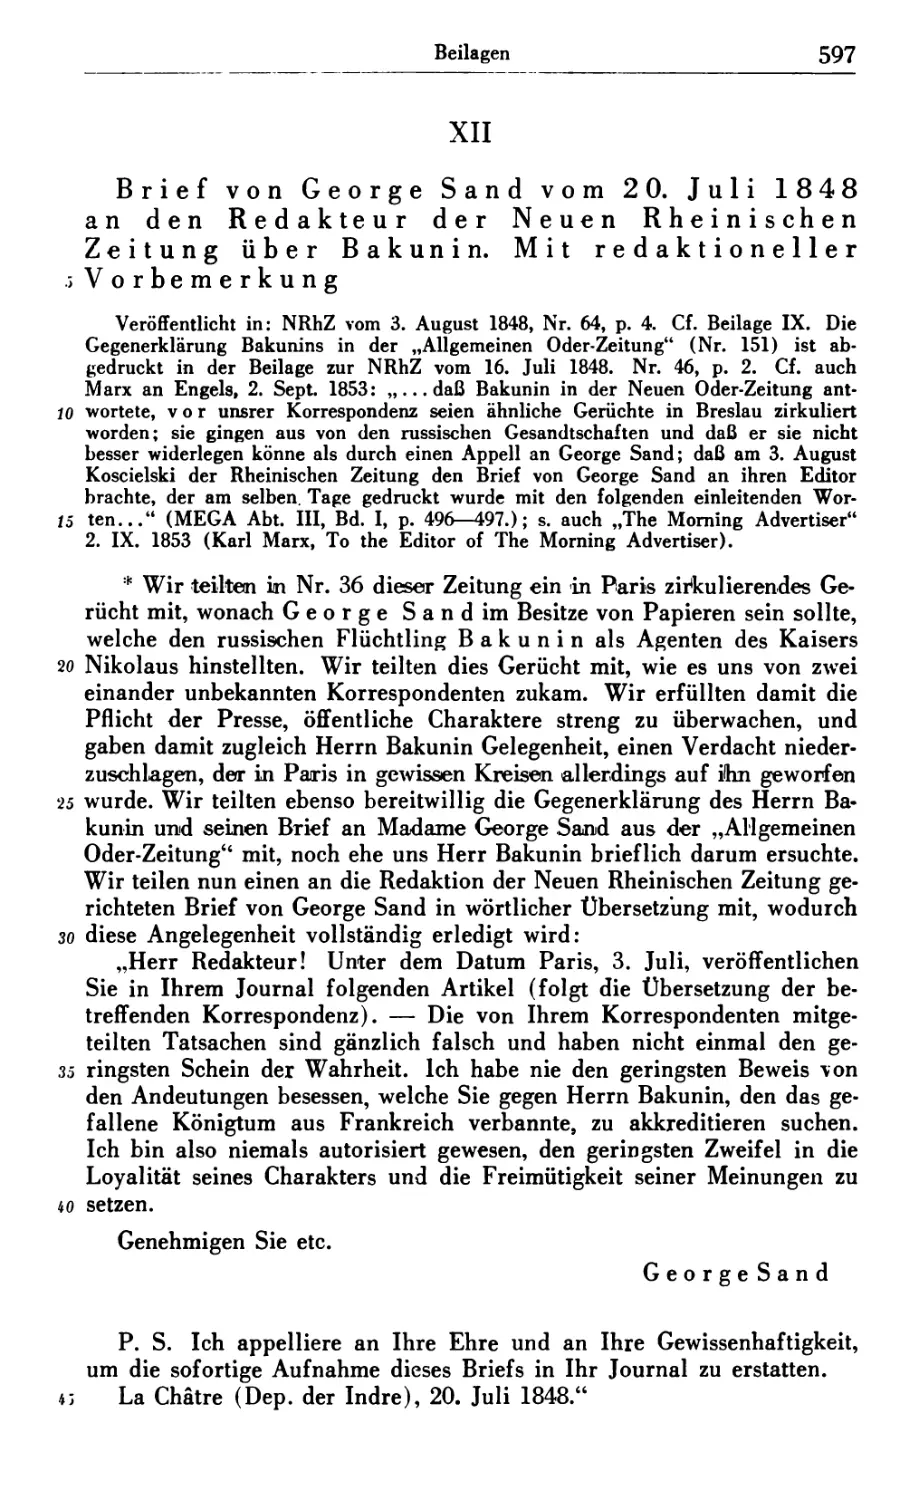 XII. Brief von George Sand vom 20. Juli 1848 an den Redakteur der Neuen Rheinischen Zeitung über Bakunin. Mit redaktioneller Vorbemerkung